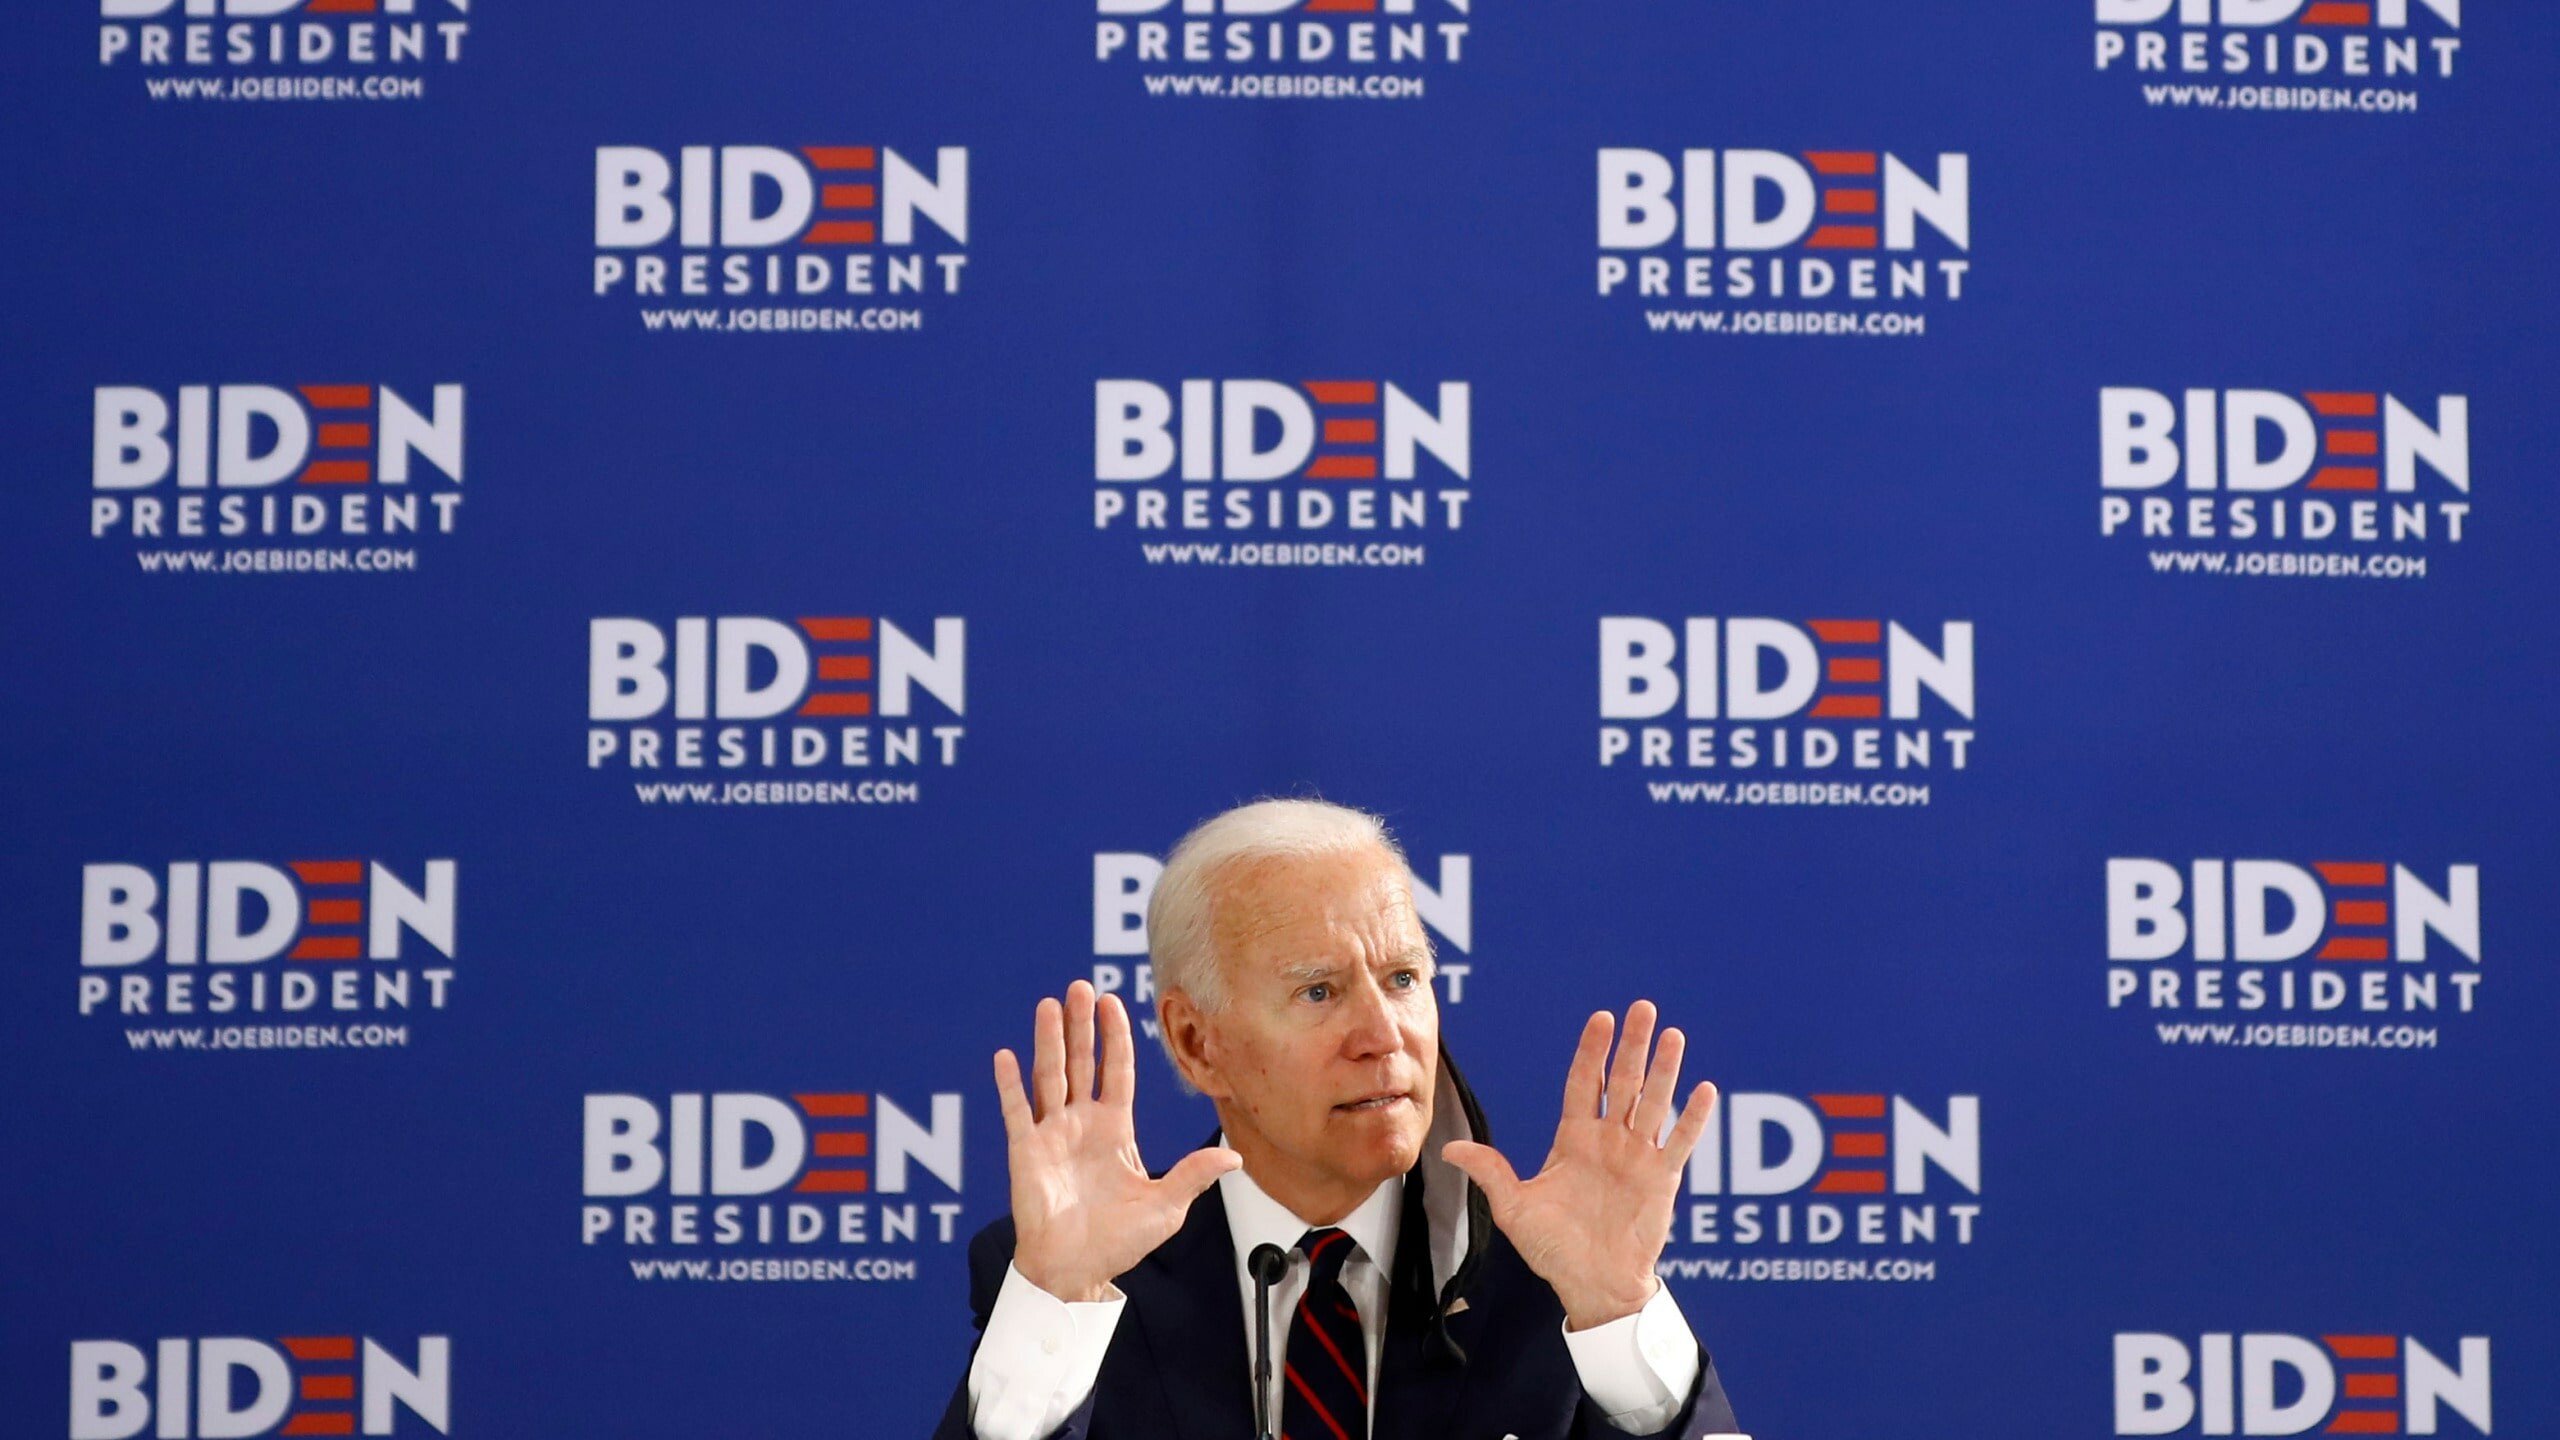 Joe Biden: The oldest president in U.S. history. 2560x1440 HD Wallpaper.